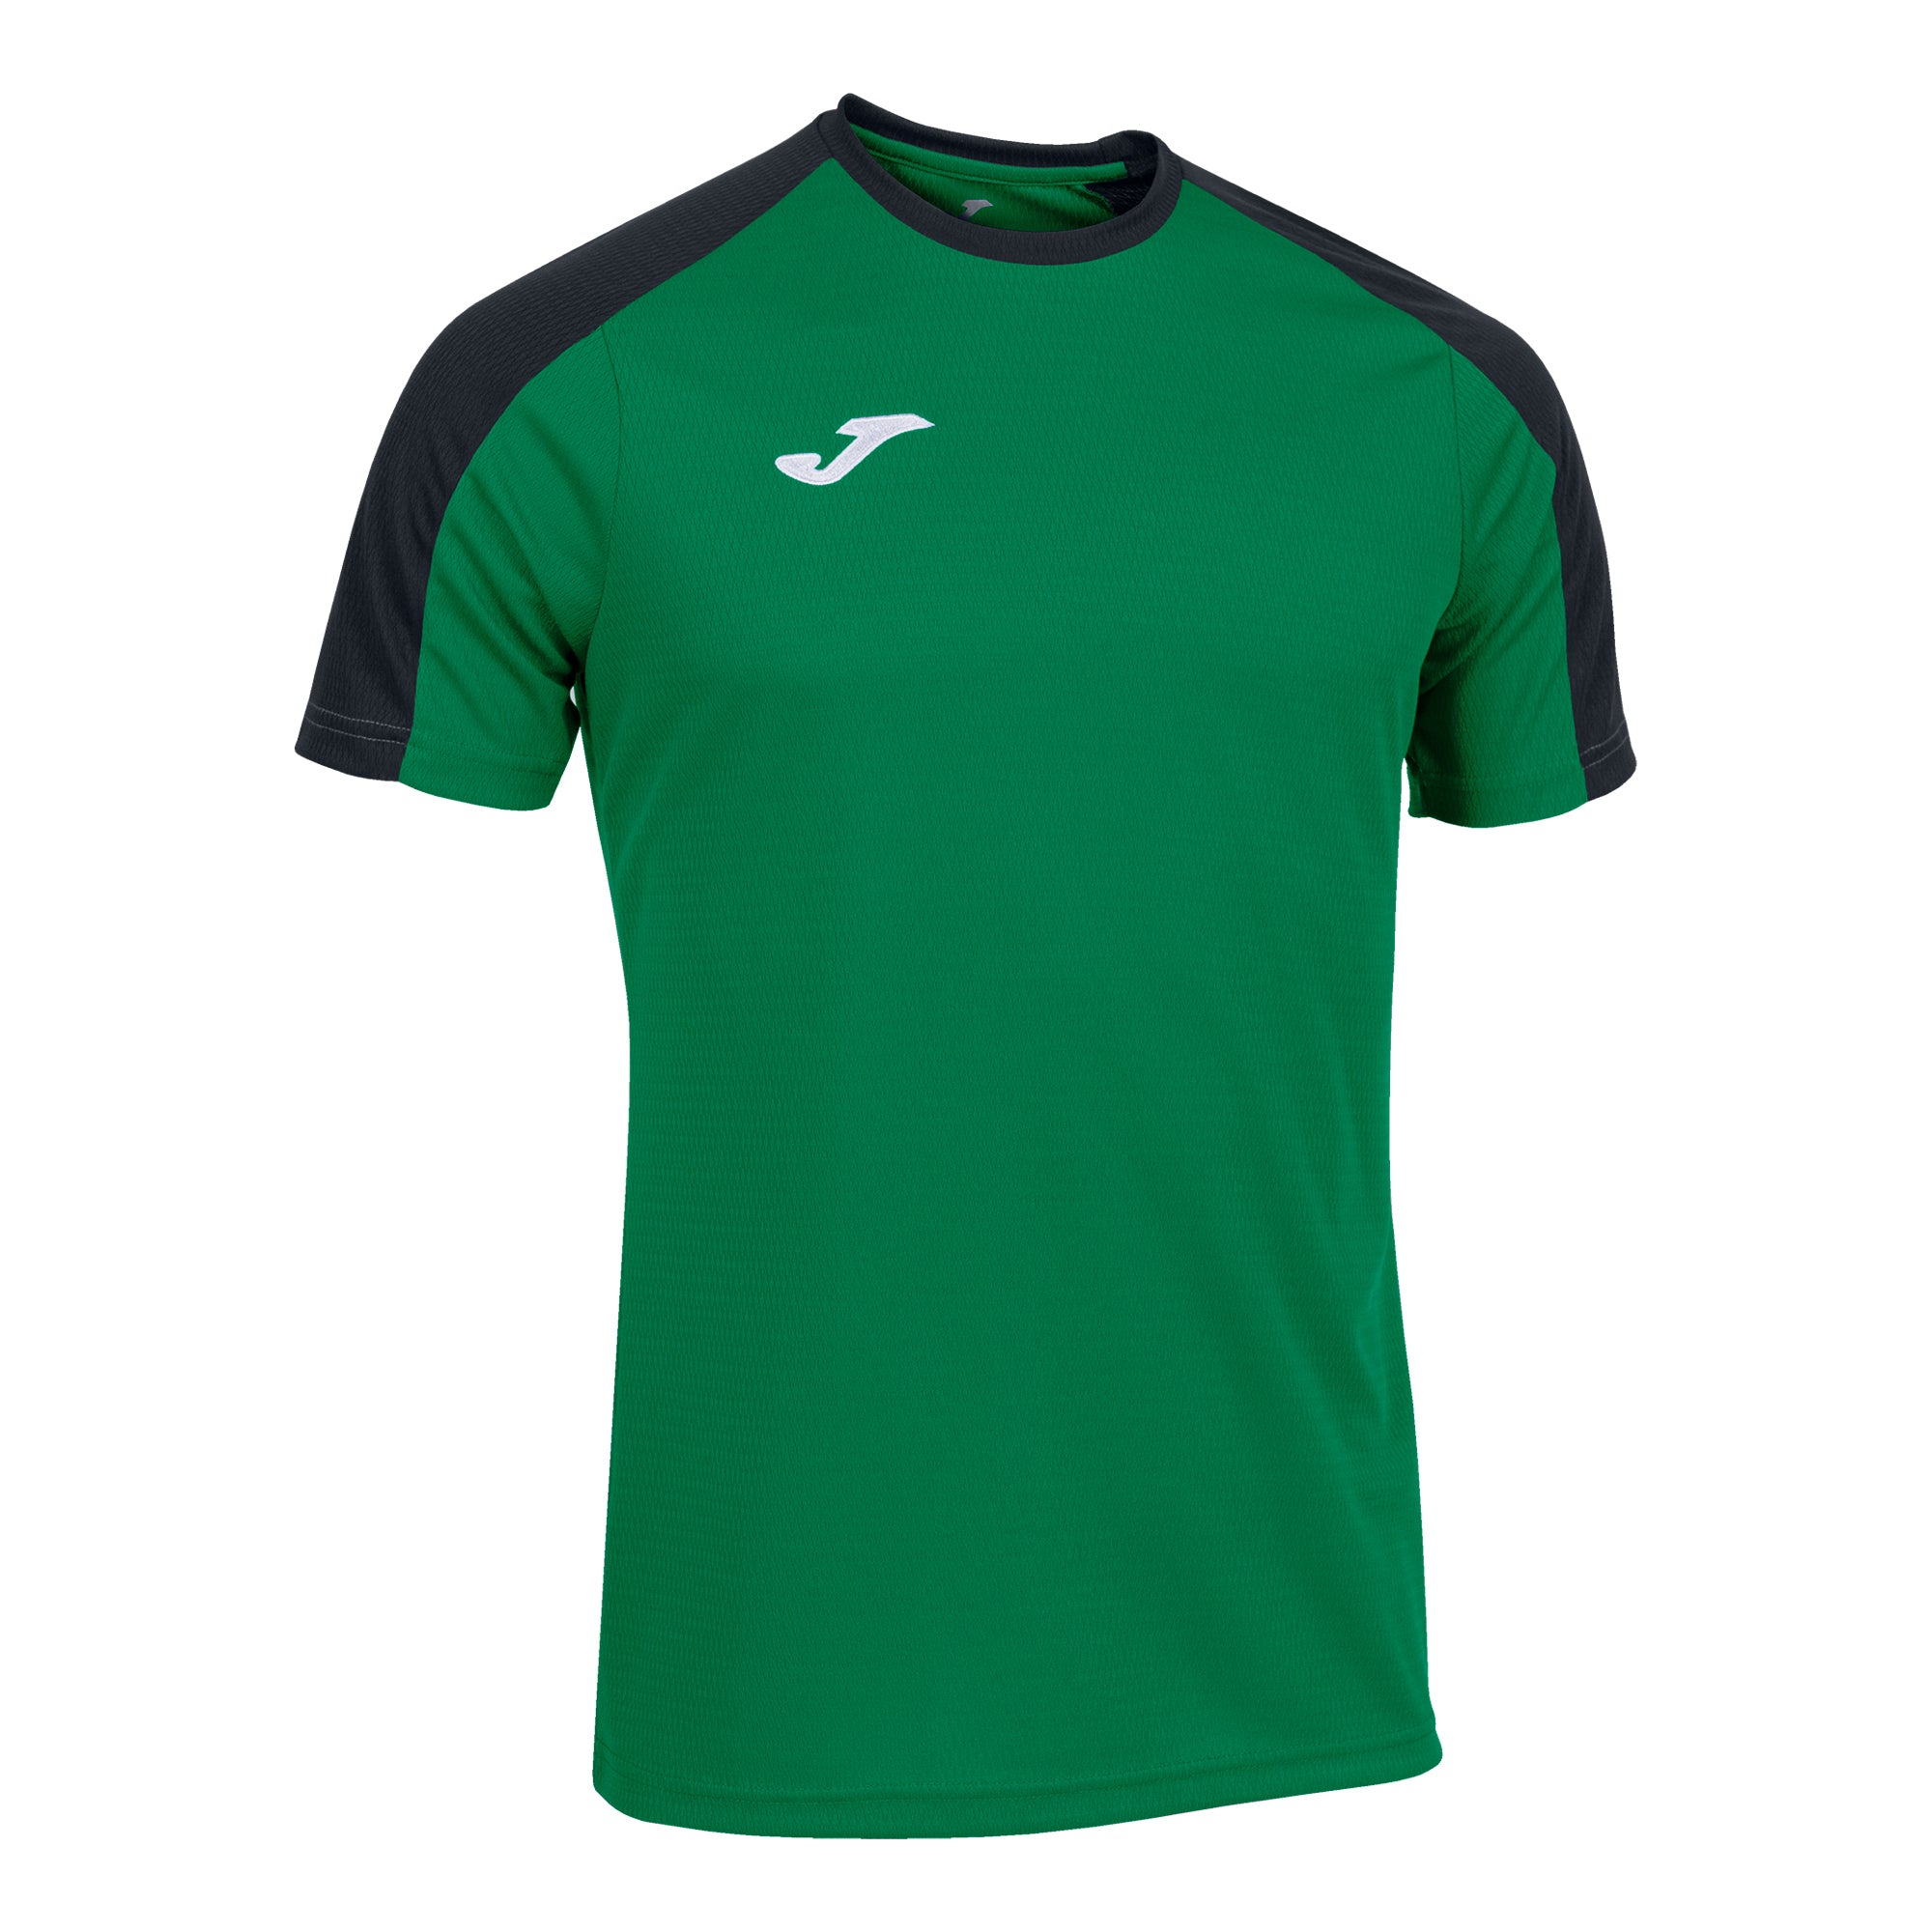 Joma Eco Championship Short Sleeve T-Shirt - Green Medium/Black